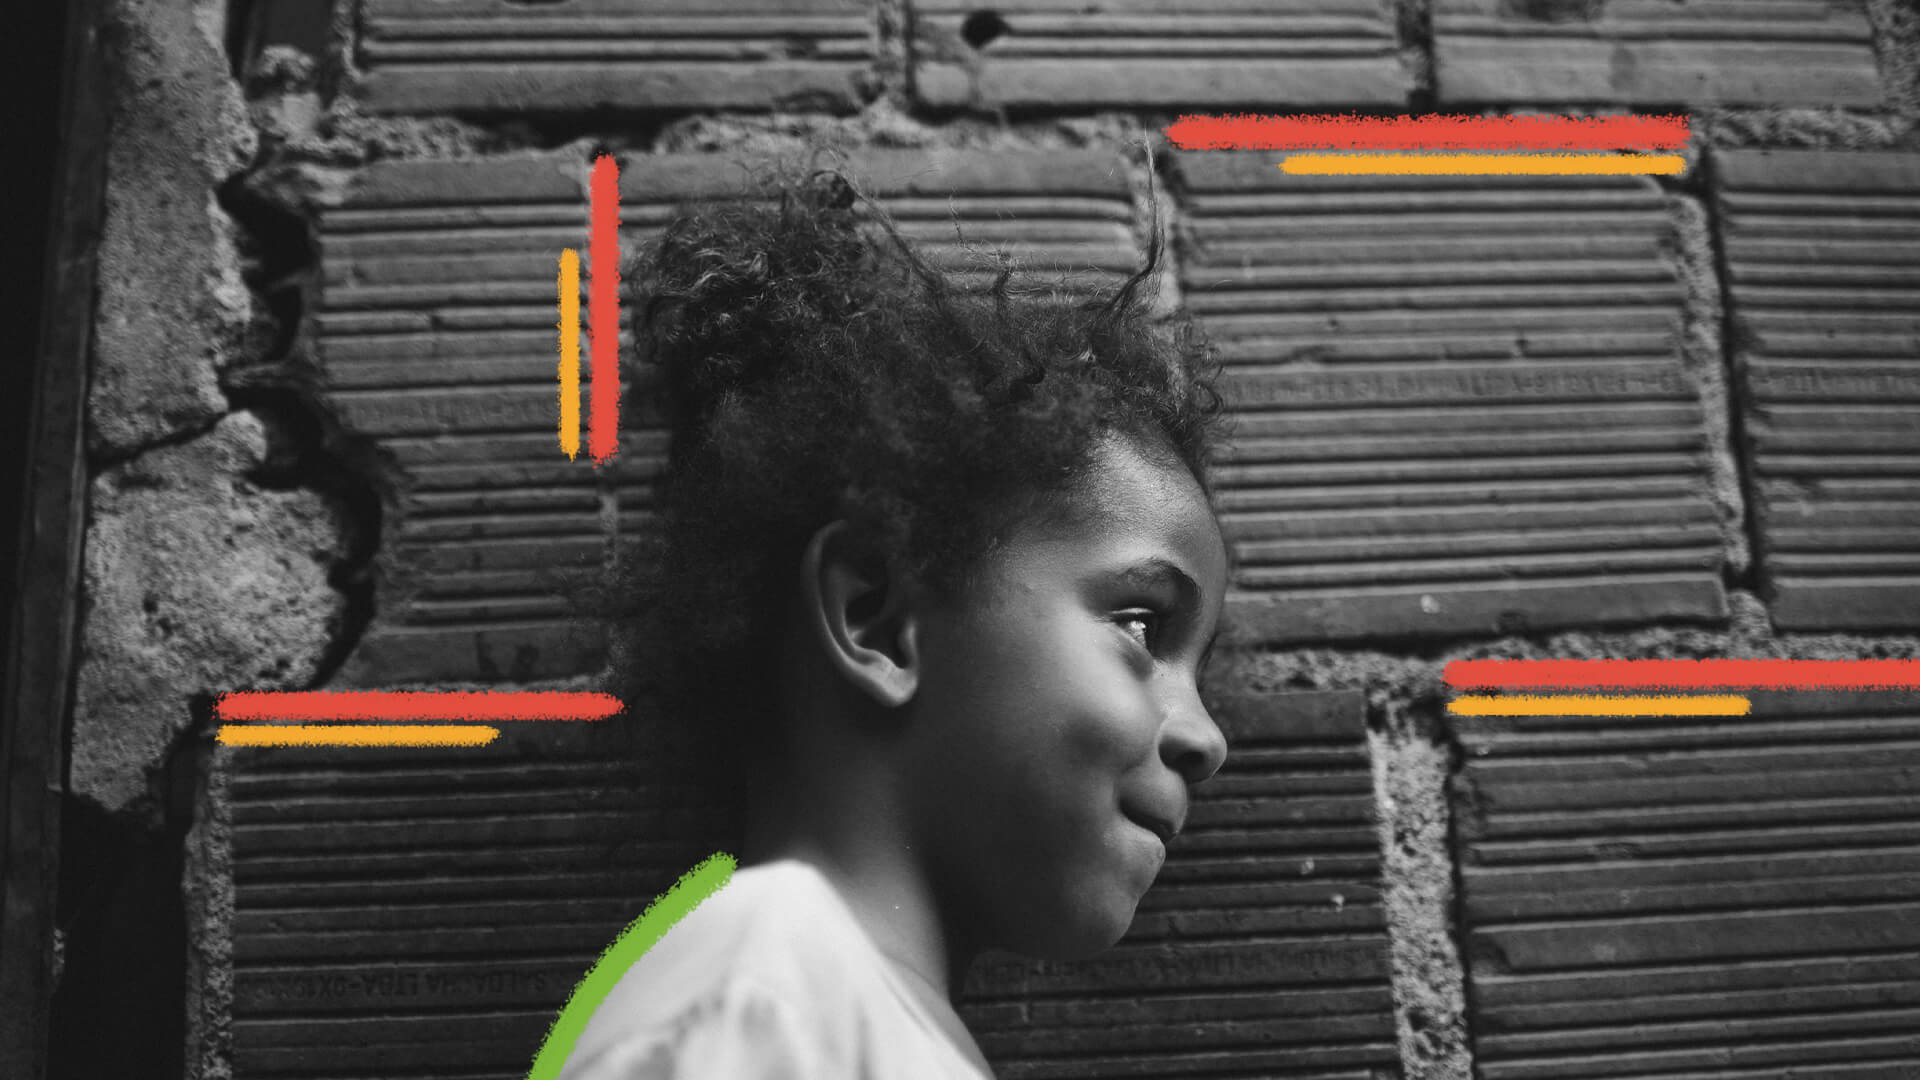 Uma menina negra está encostada em uma parede de tijolos, de perfil. A imagem está em preto e branco e possui intervenções de rabiscos coloridos.